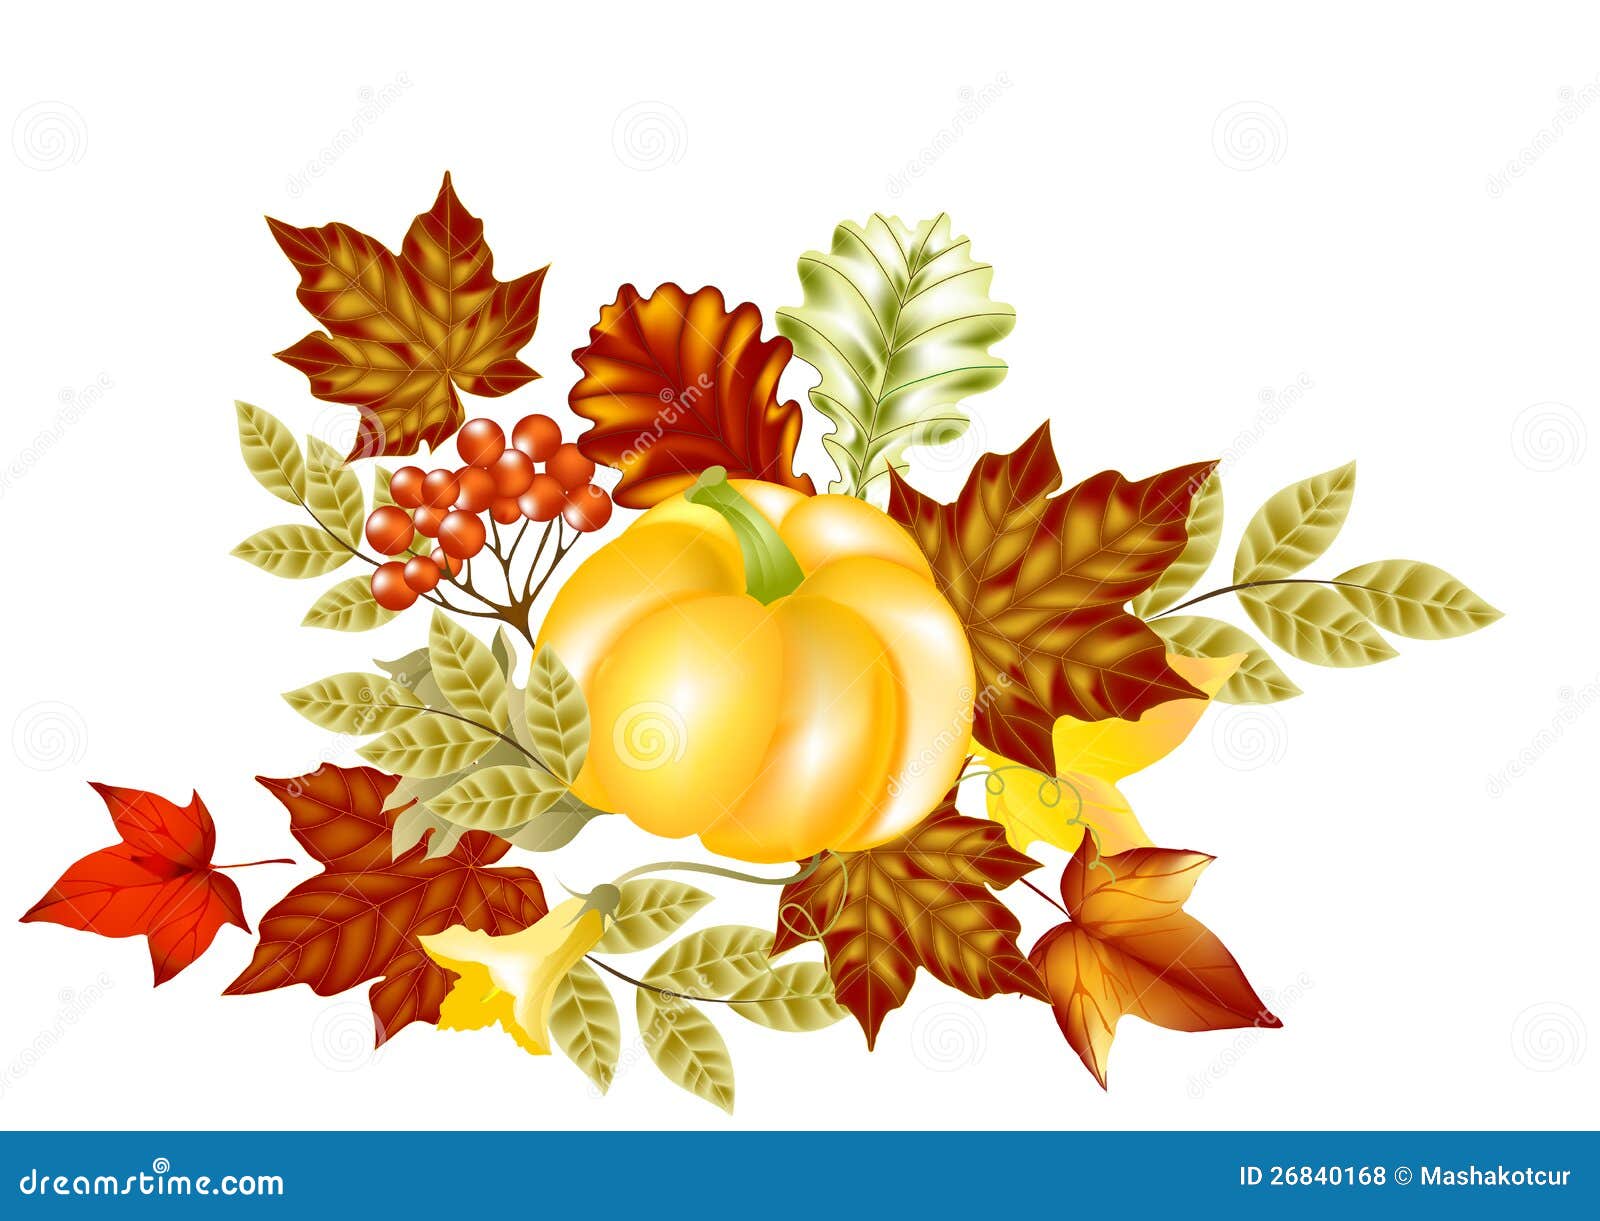 https://thumbs.dreamstime.com/z/autumn-card-pumpkin-maple-leafs-26840168.jpg